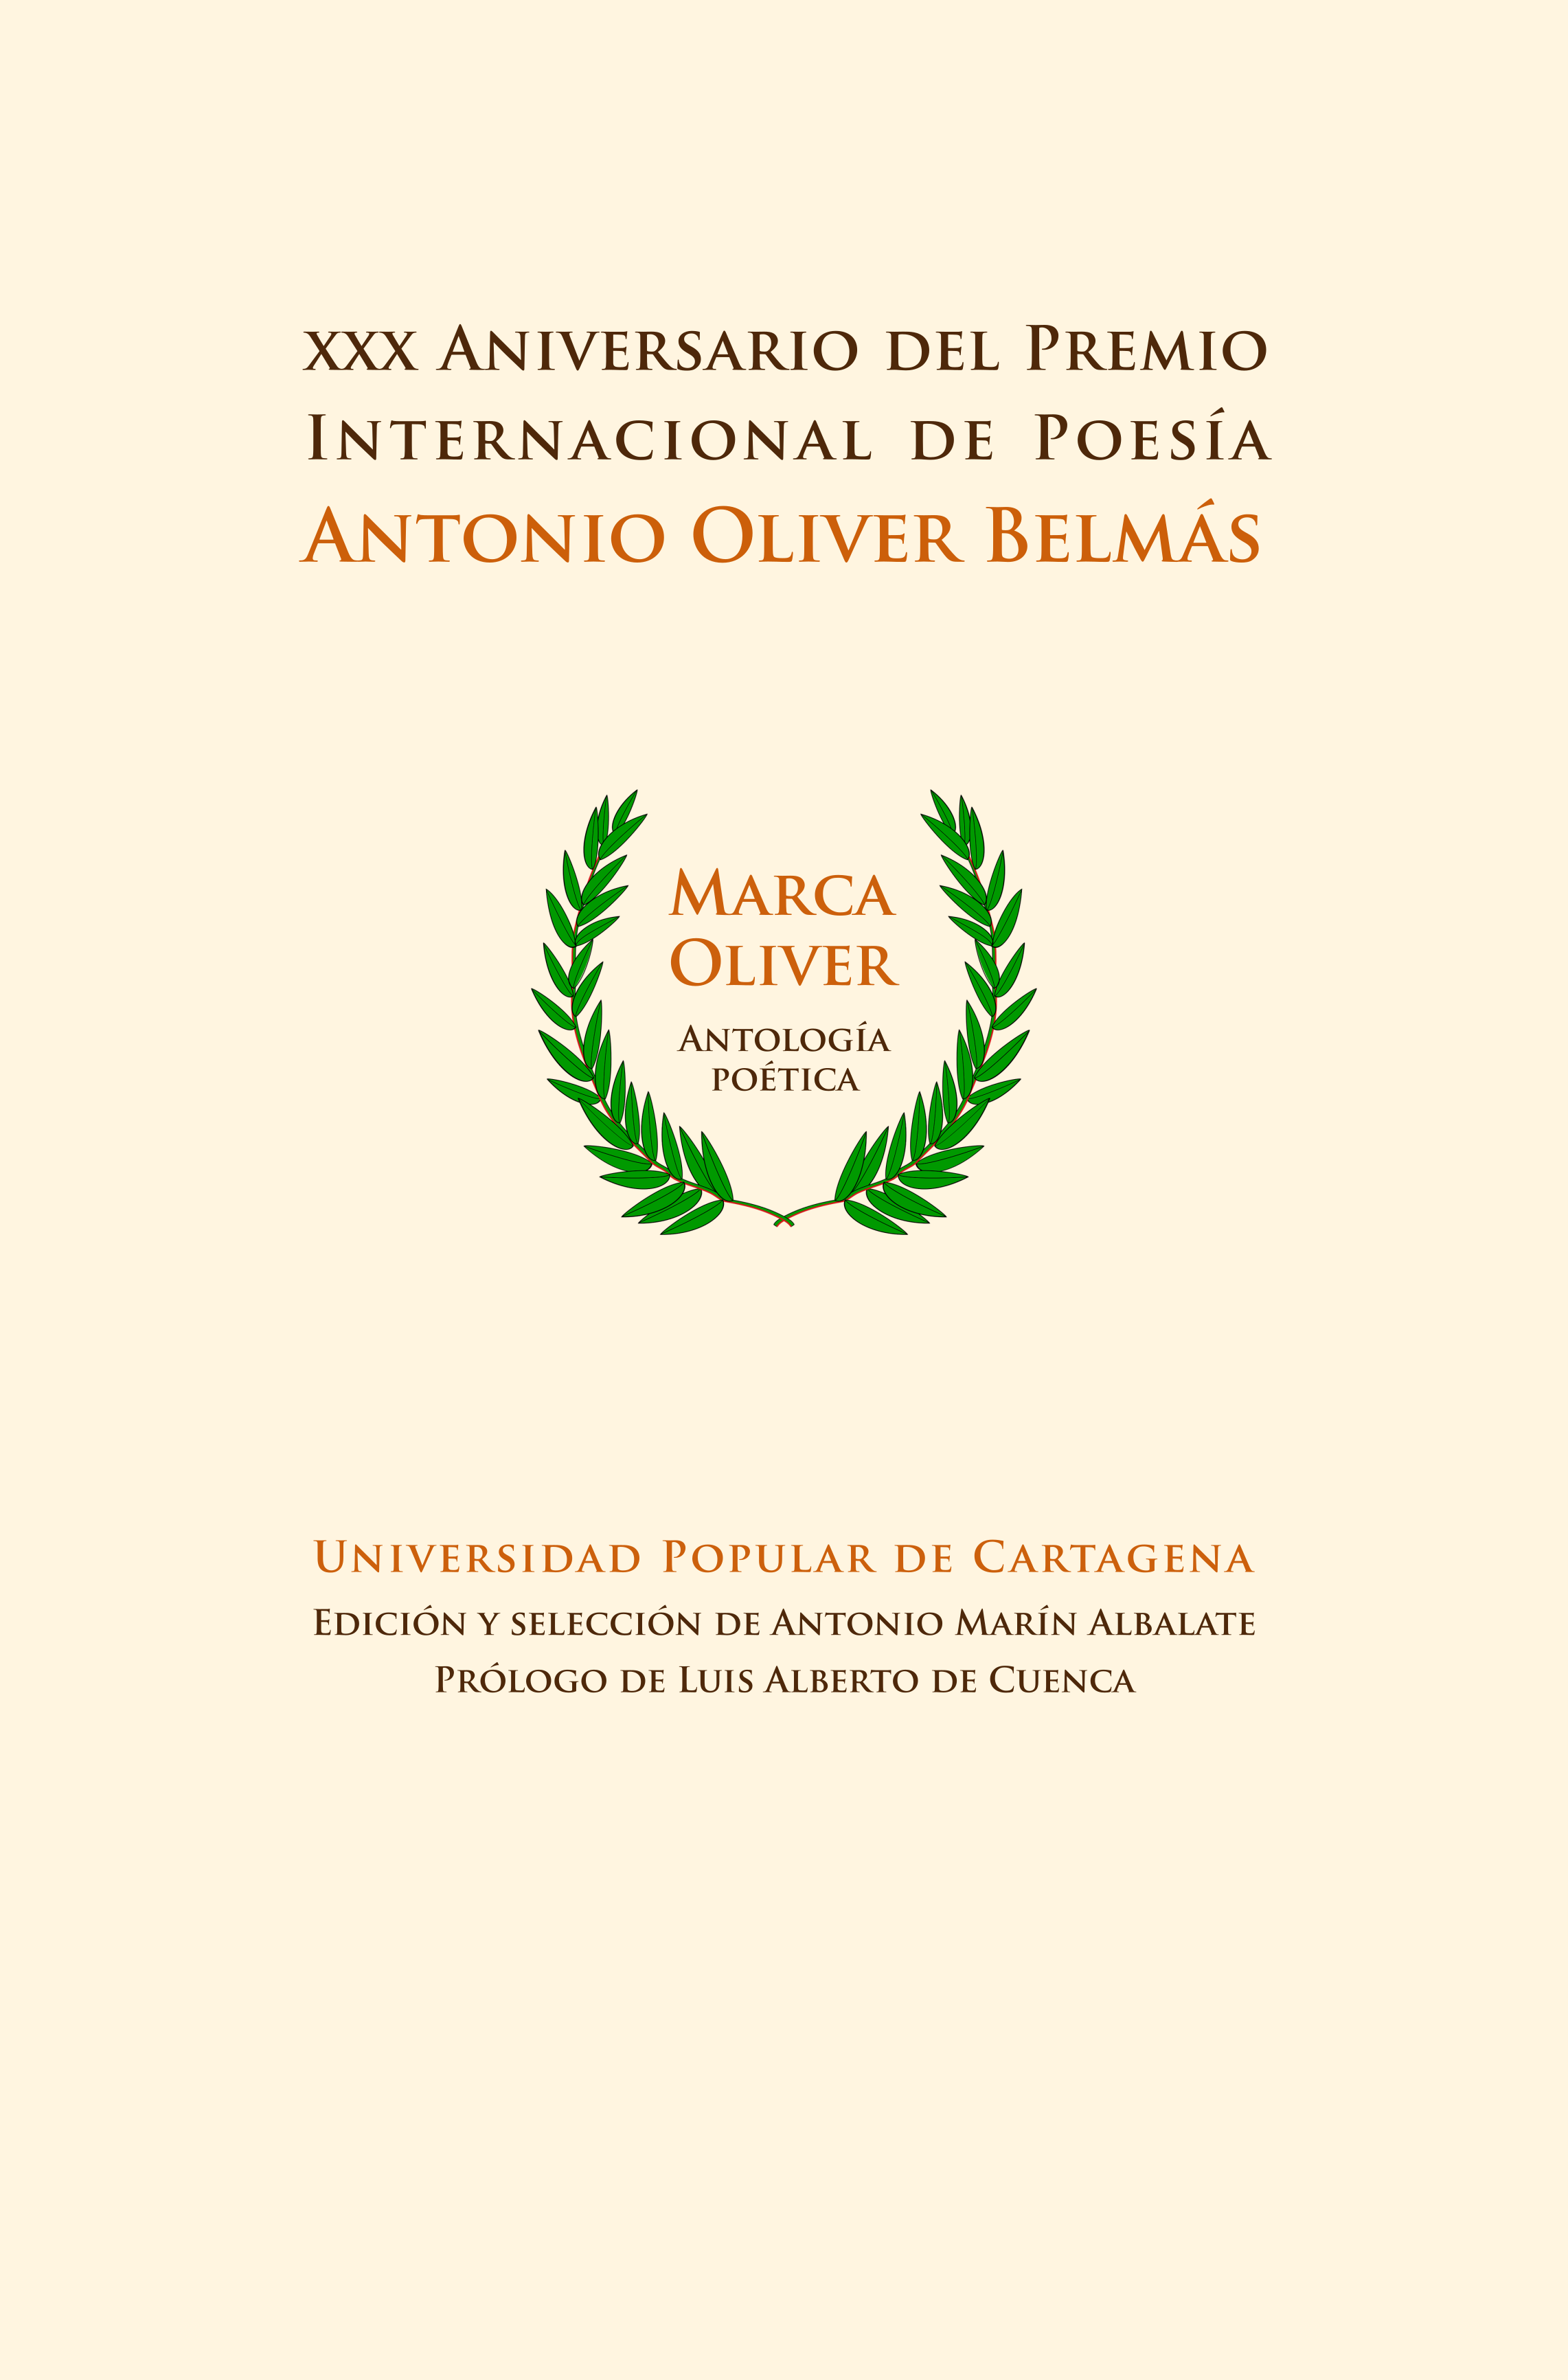 Imagen del Poster XXX Aniversario del Premio Internacional de Poesía Antonio Oliver Belmás